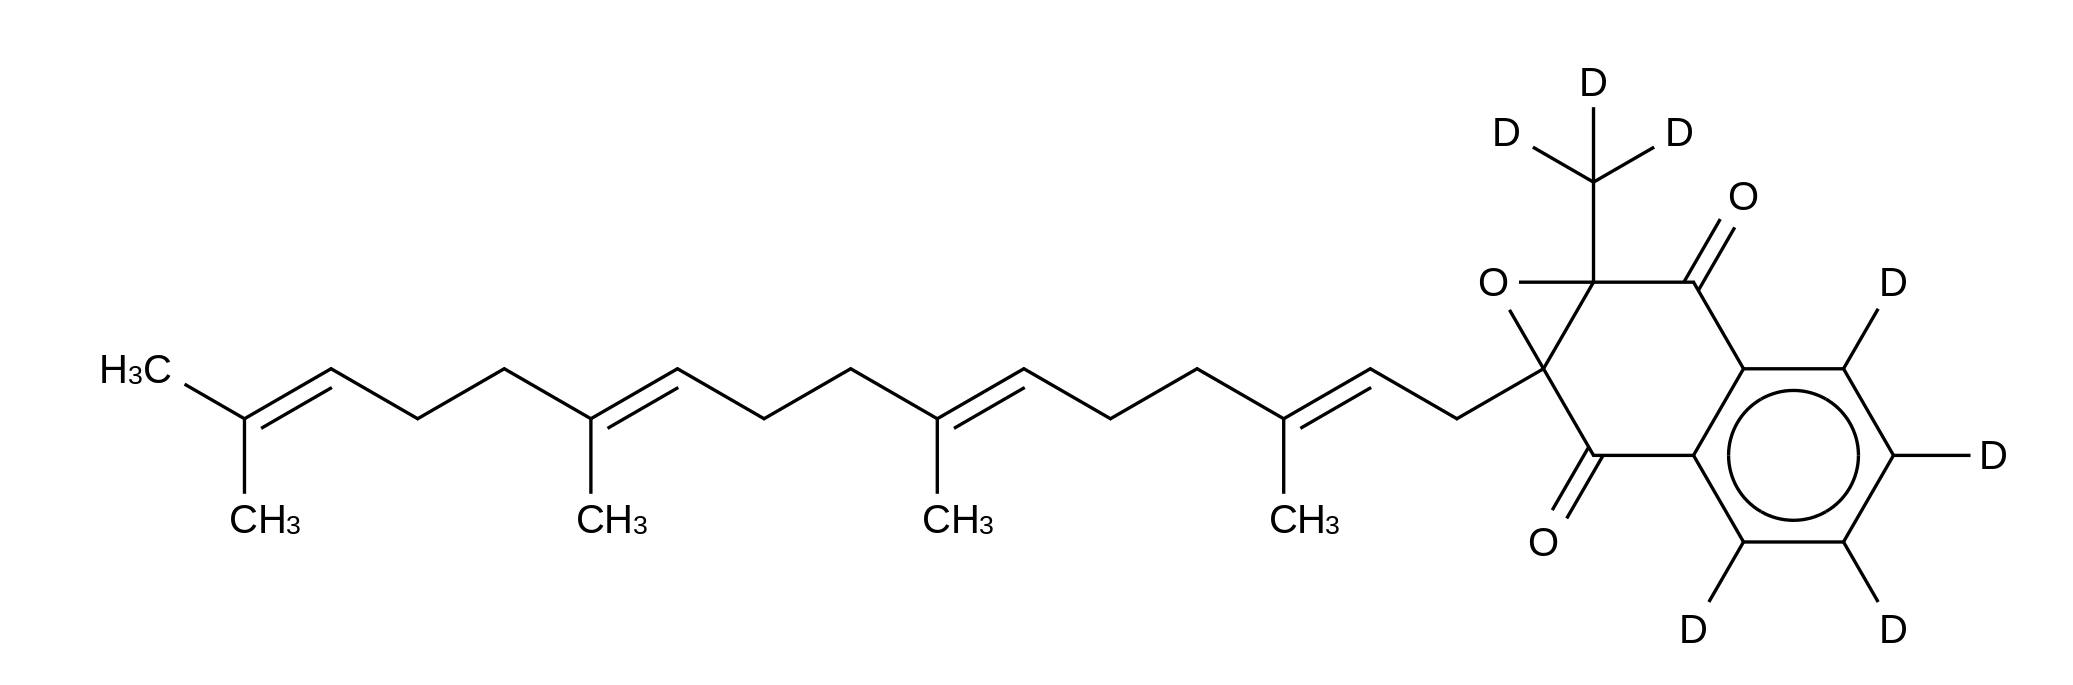 Menaquinone 4-d<sub>7</sub> 2,3-Epoxide